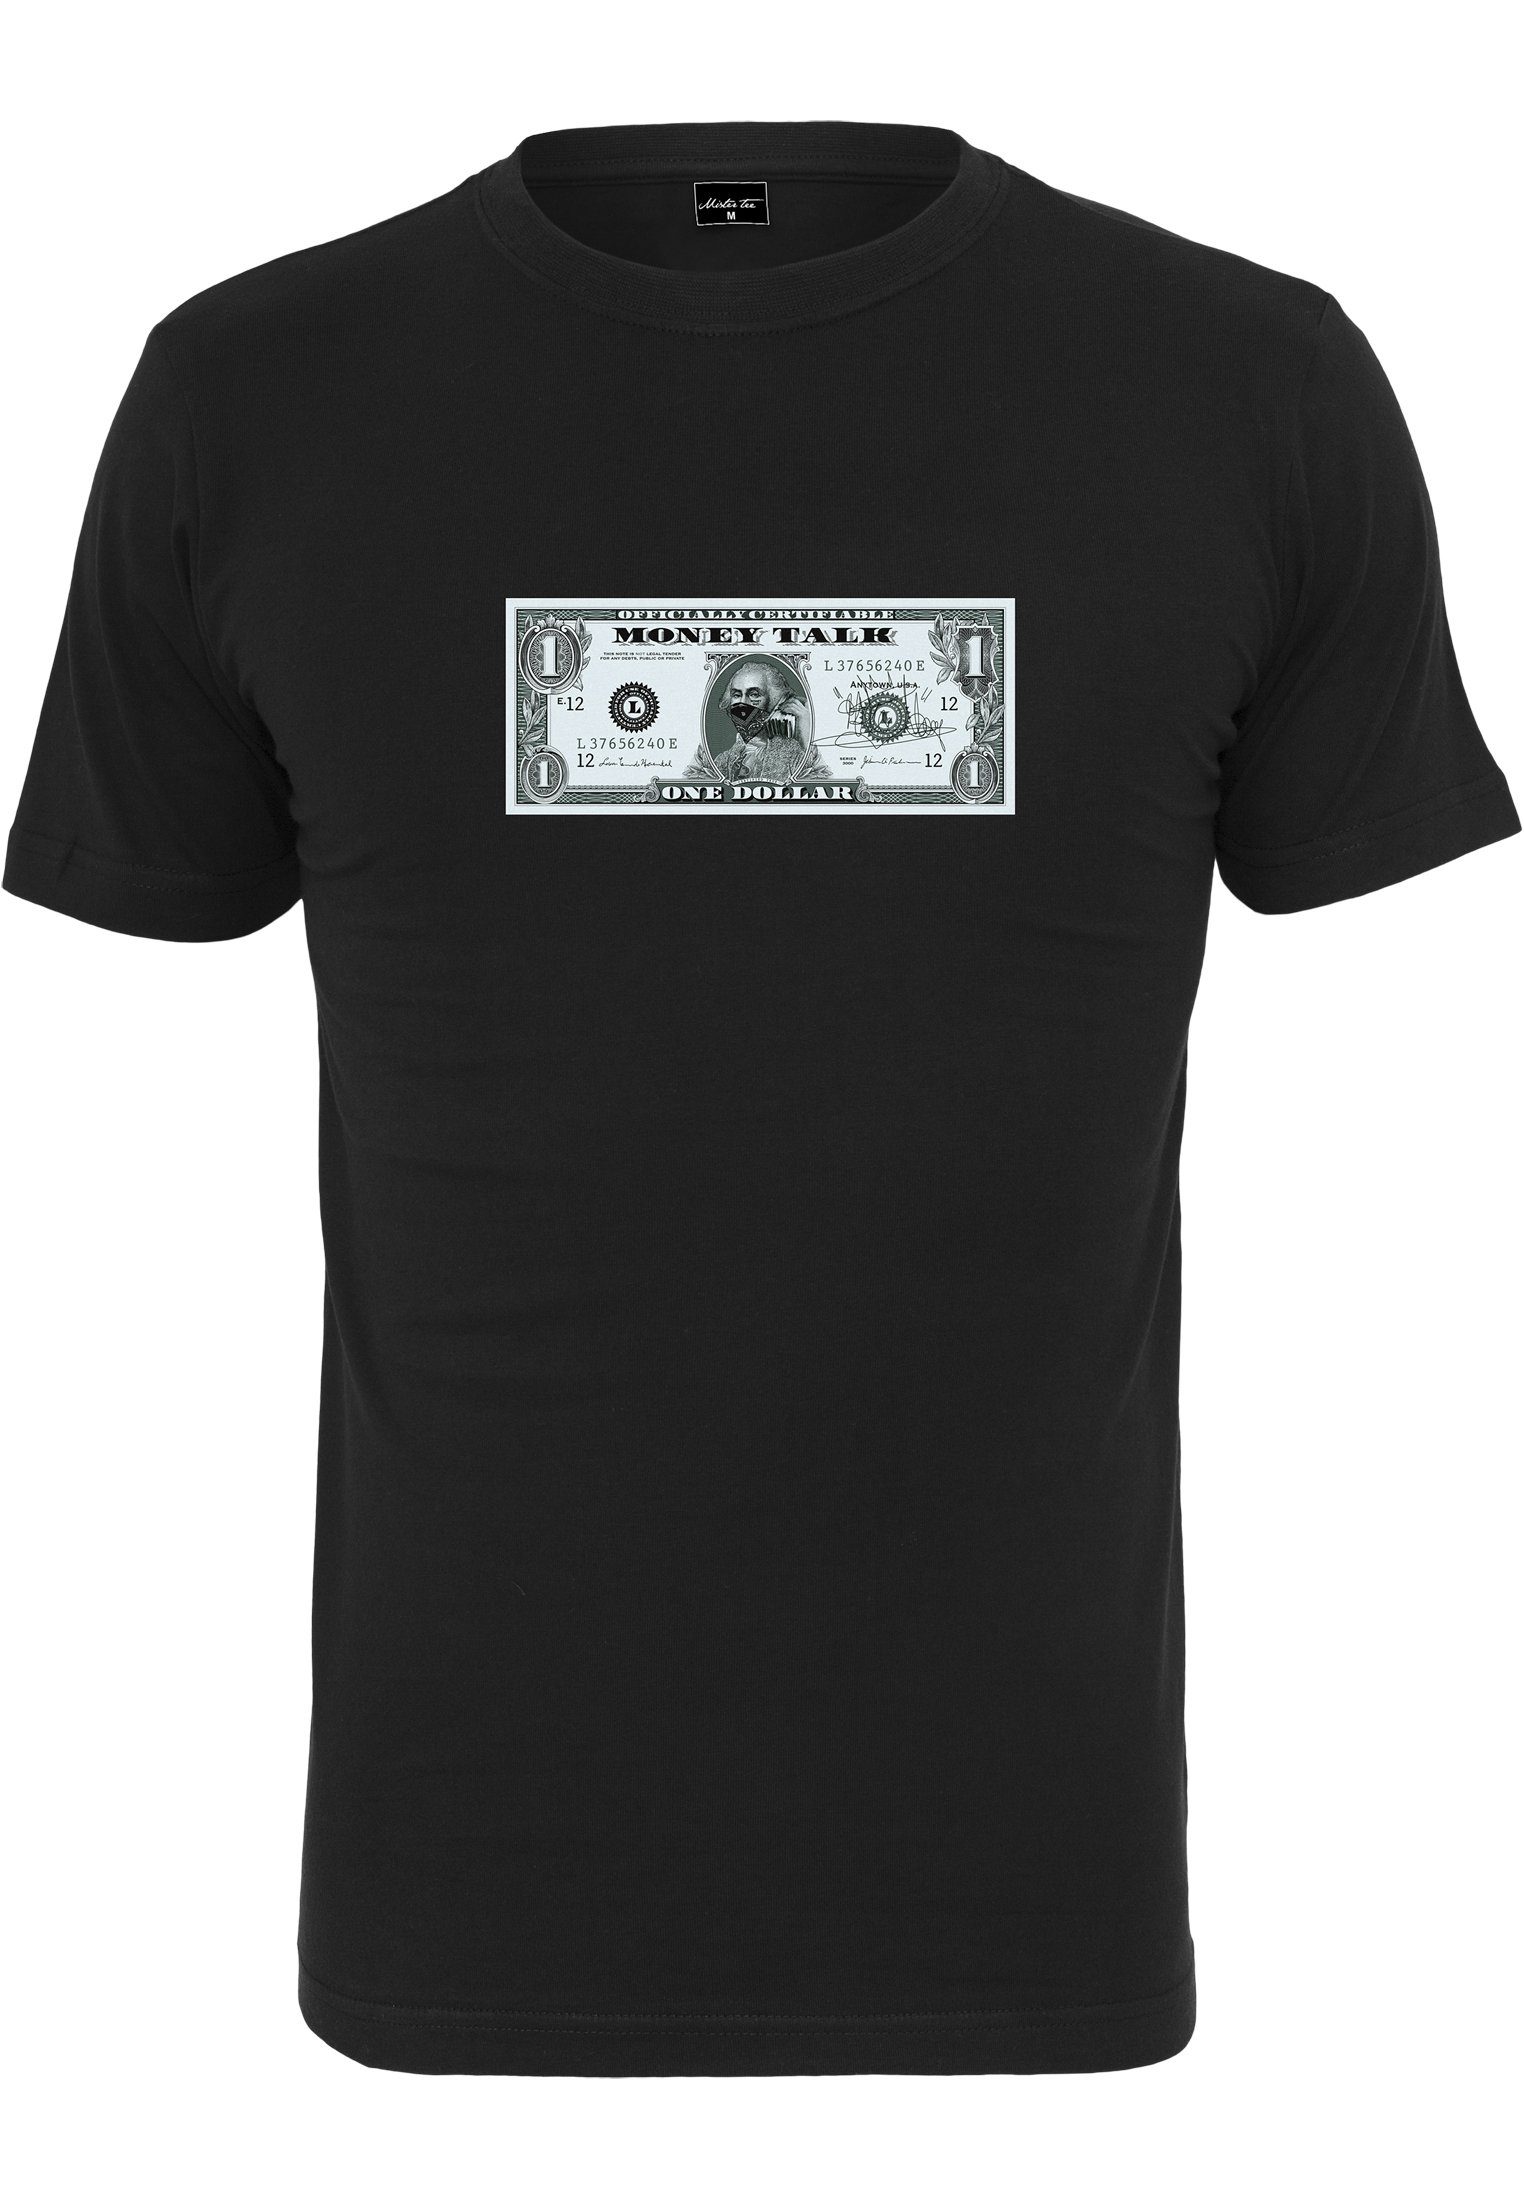 Tee Money Herren Tee (1-tlg) Mister MisterTee T-Shirt Guy